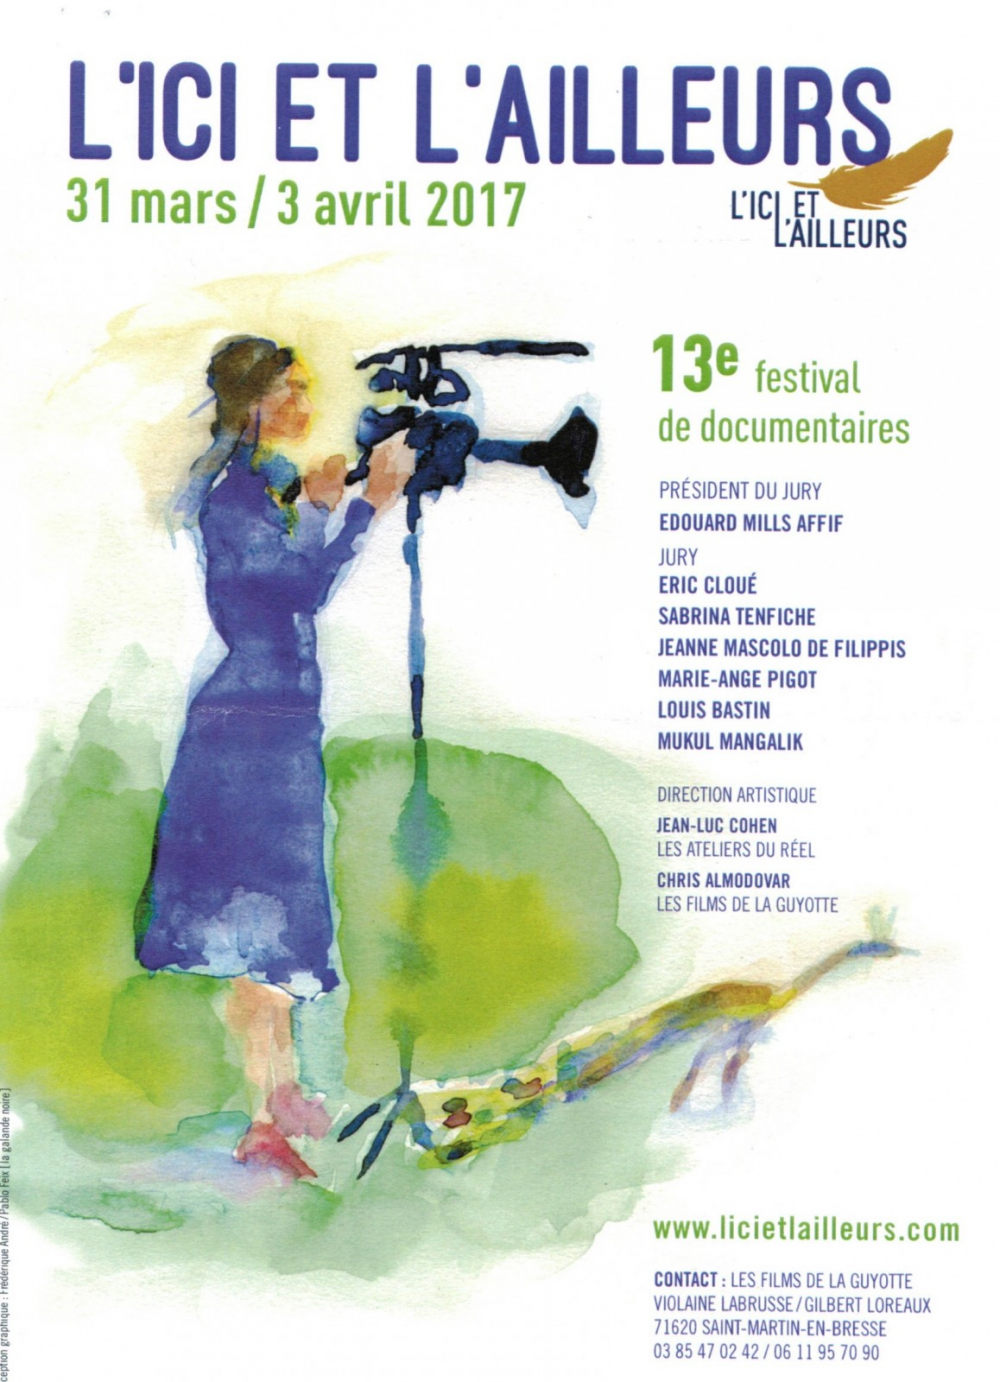 Festival « L’ici et l’ailleurs » du 31 mars au 3 avril 2017